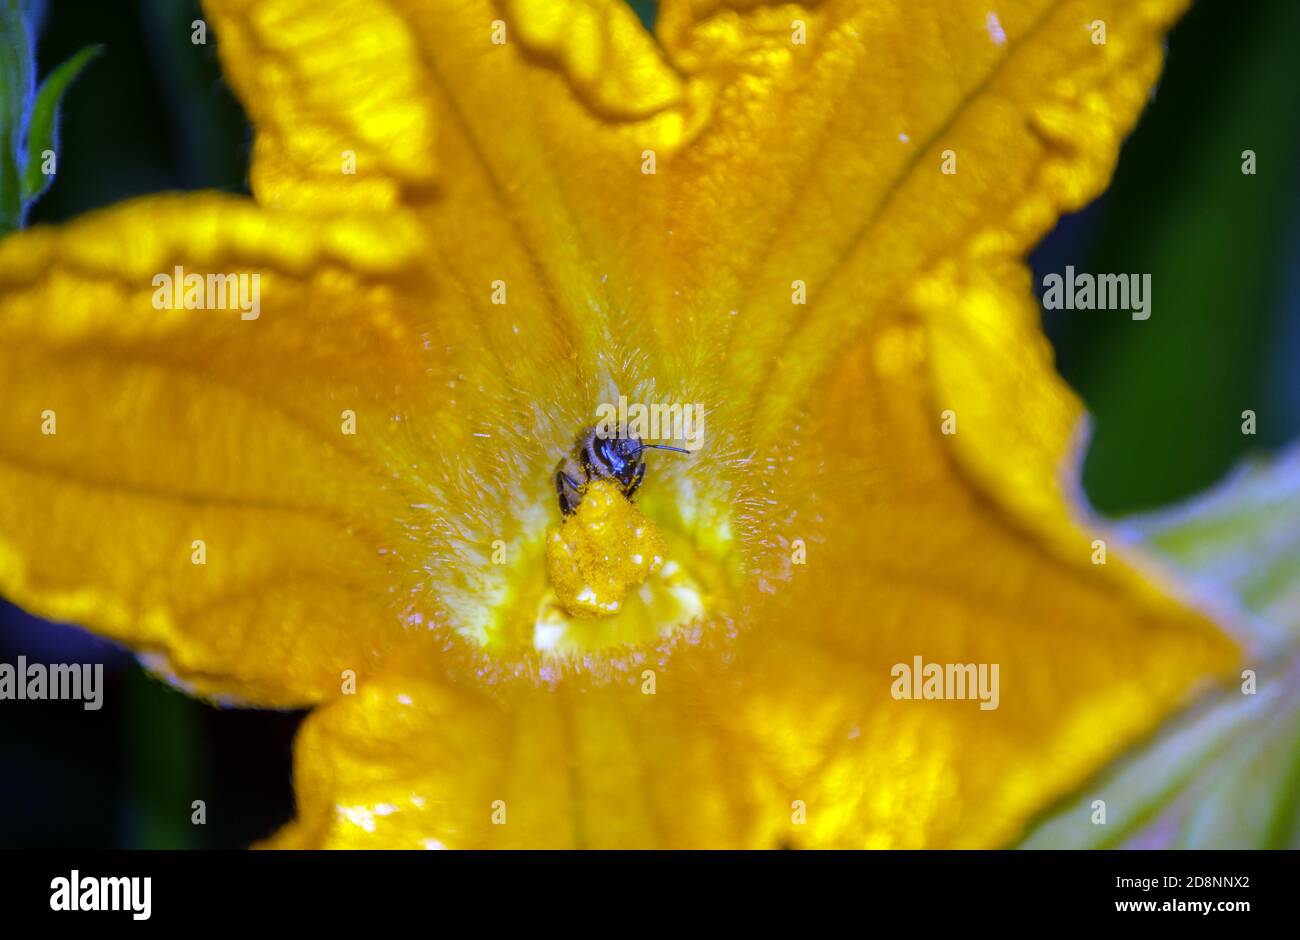 Les gouttes de pollen couvrent cette abeille comme il travaille à polliniser les fleurs de courgettes afin que les fruits puissent être produits. Effet bokeh. Banque D'Images